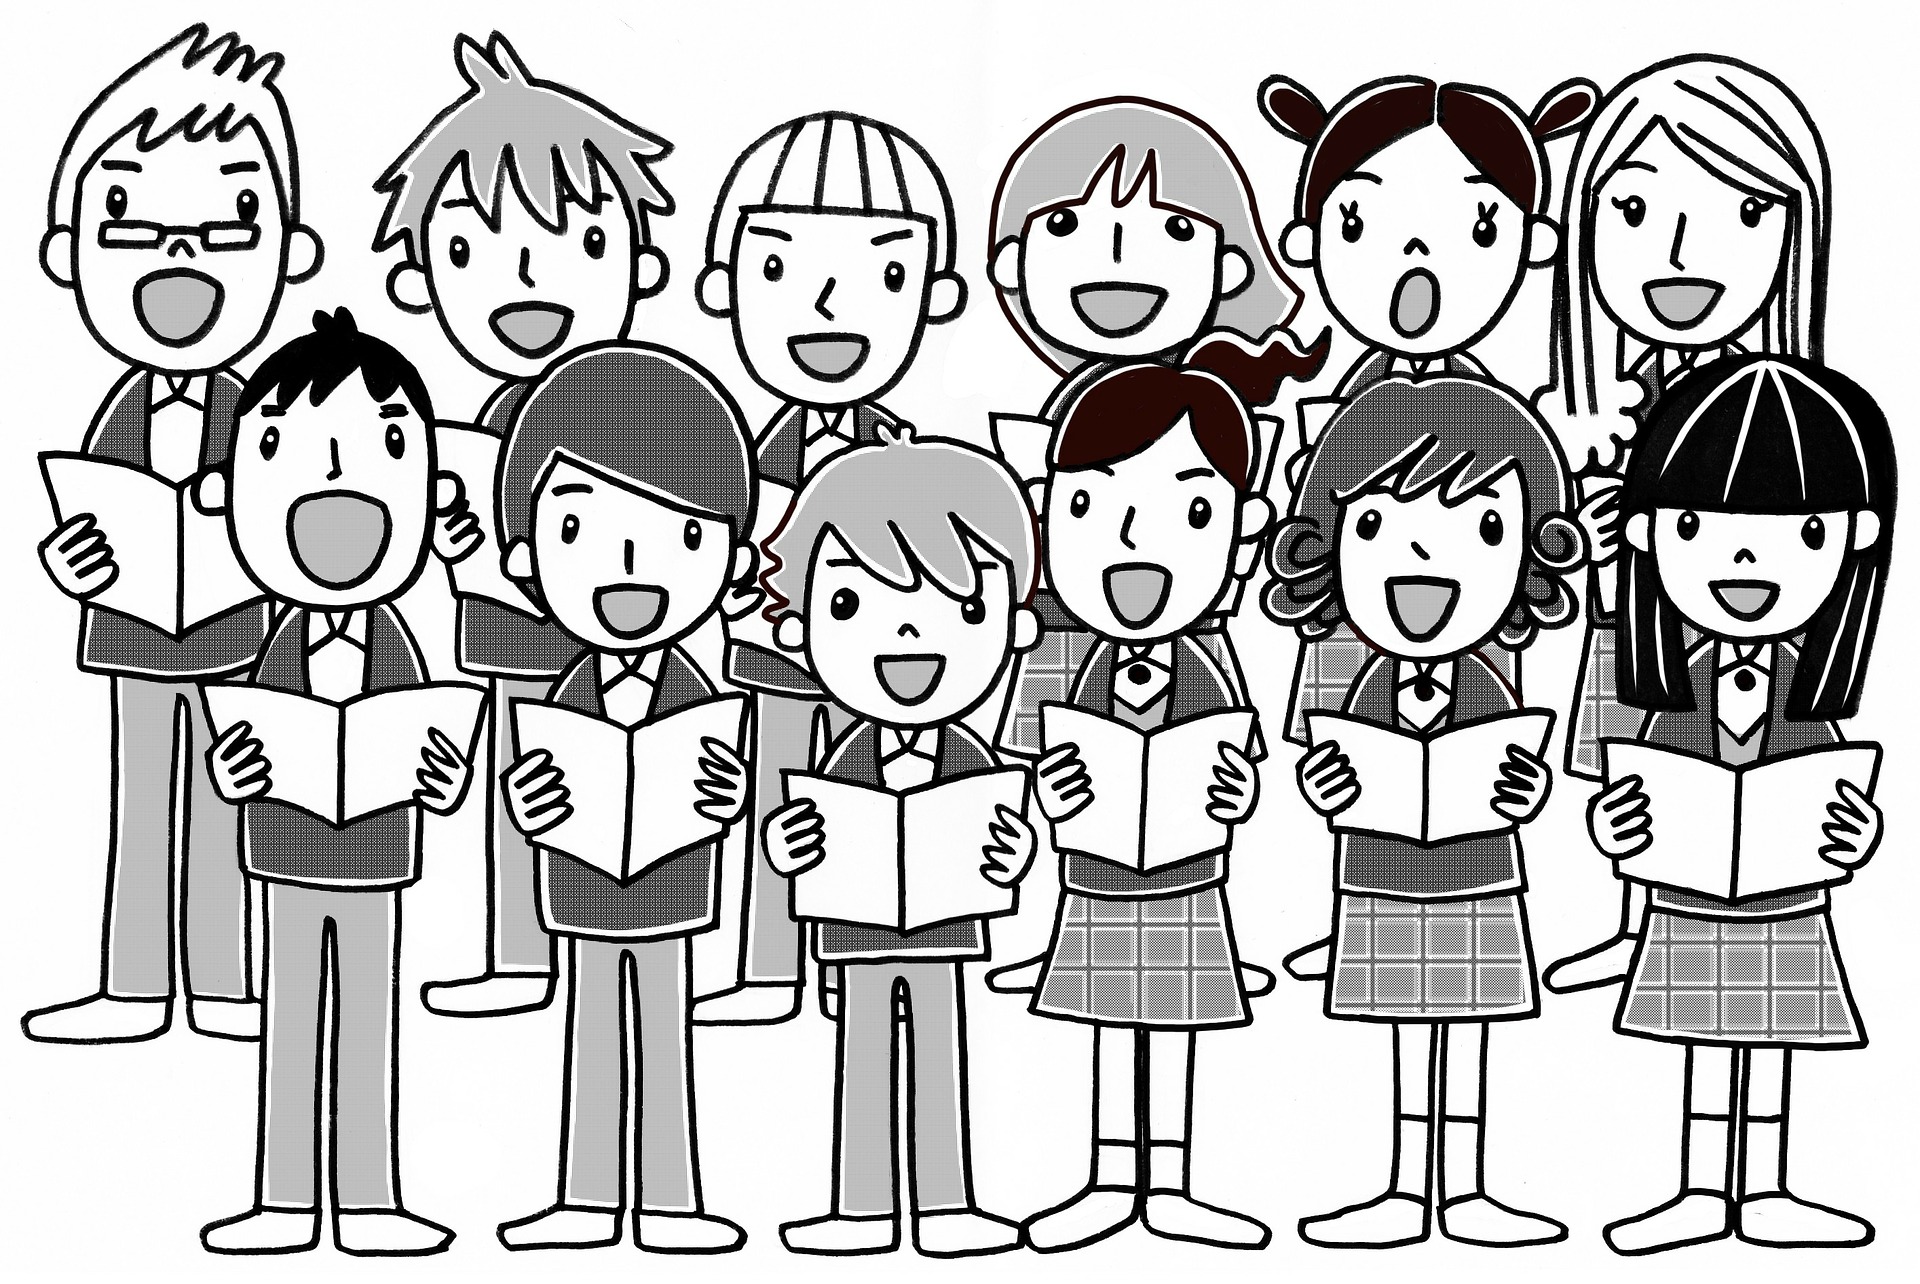 joonistatud pilt koorina laulvatest poistest ja tüdrukutest